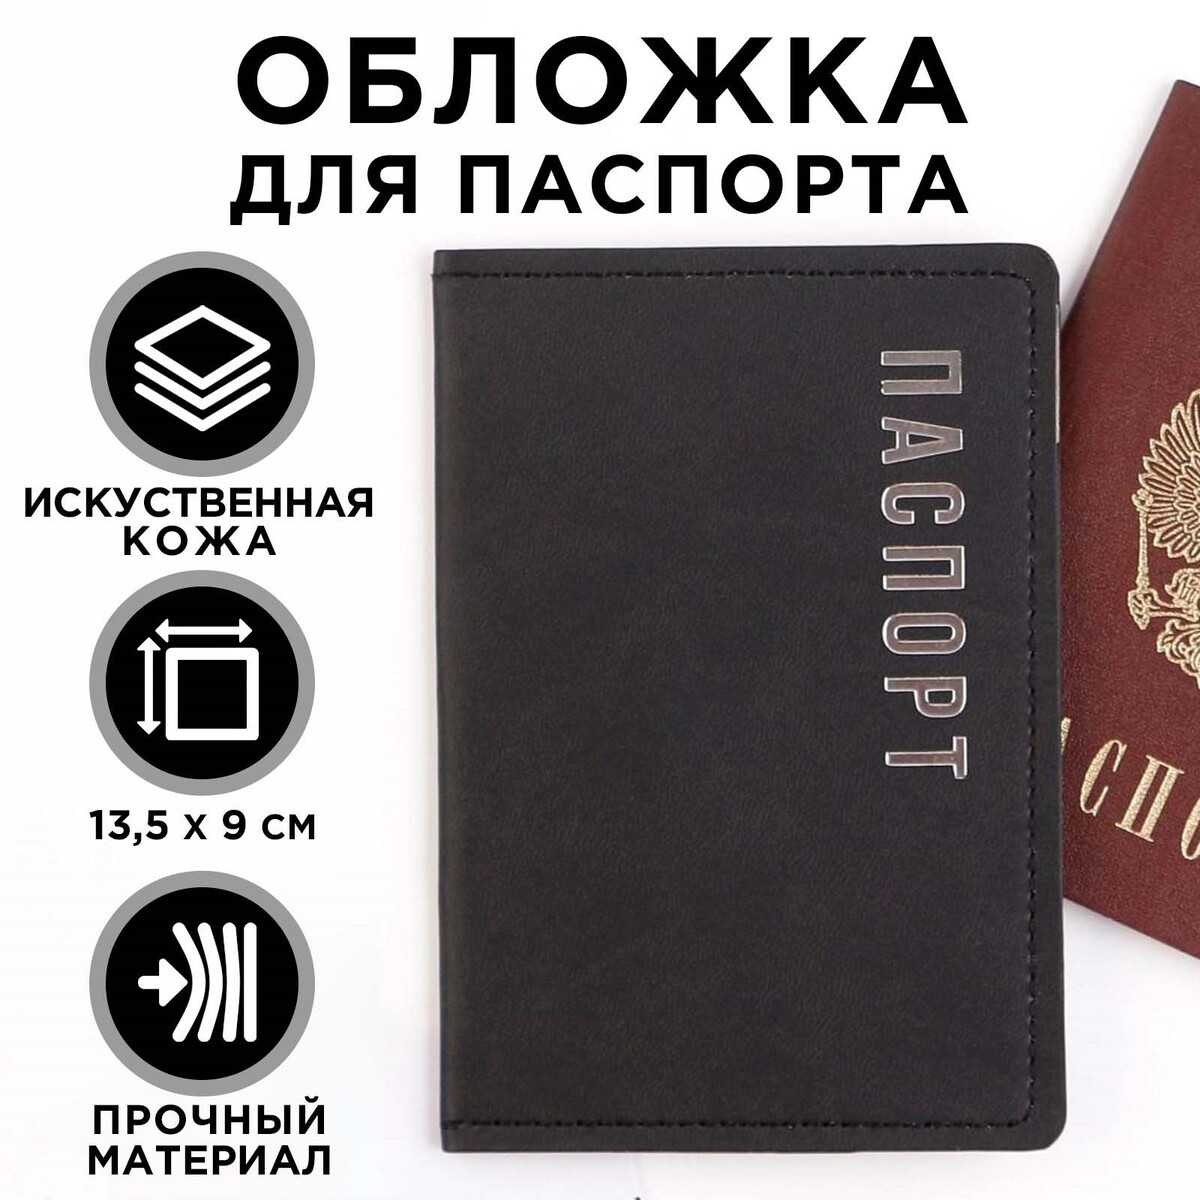 Обложки для паспорта своими руками: 10 идей с инструкциями